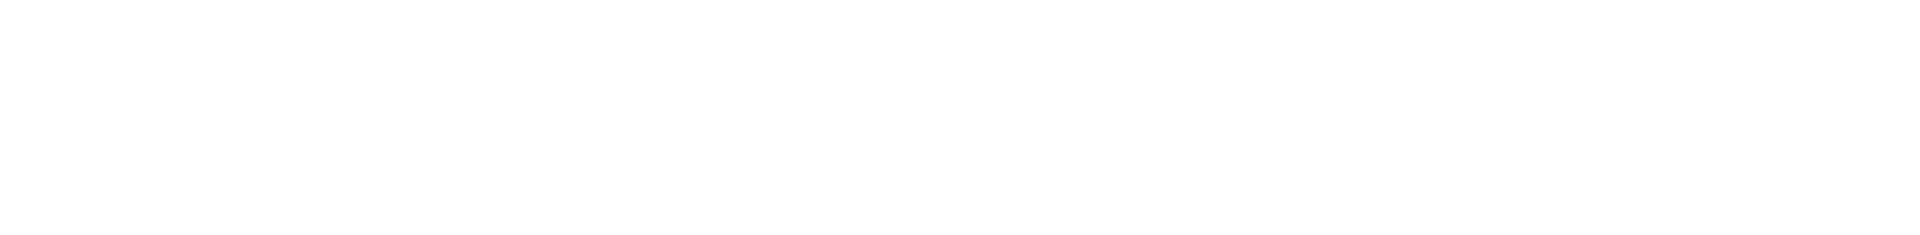 sagarana-logo-2